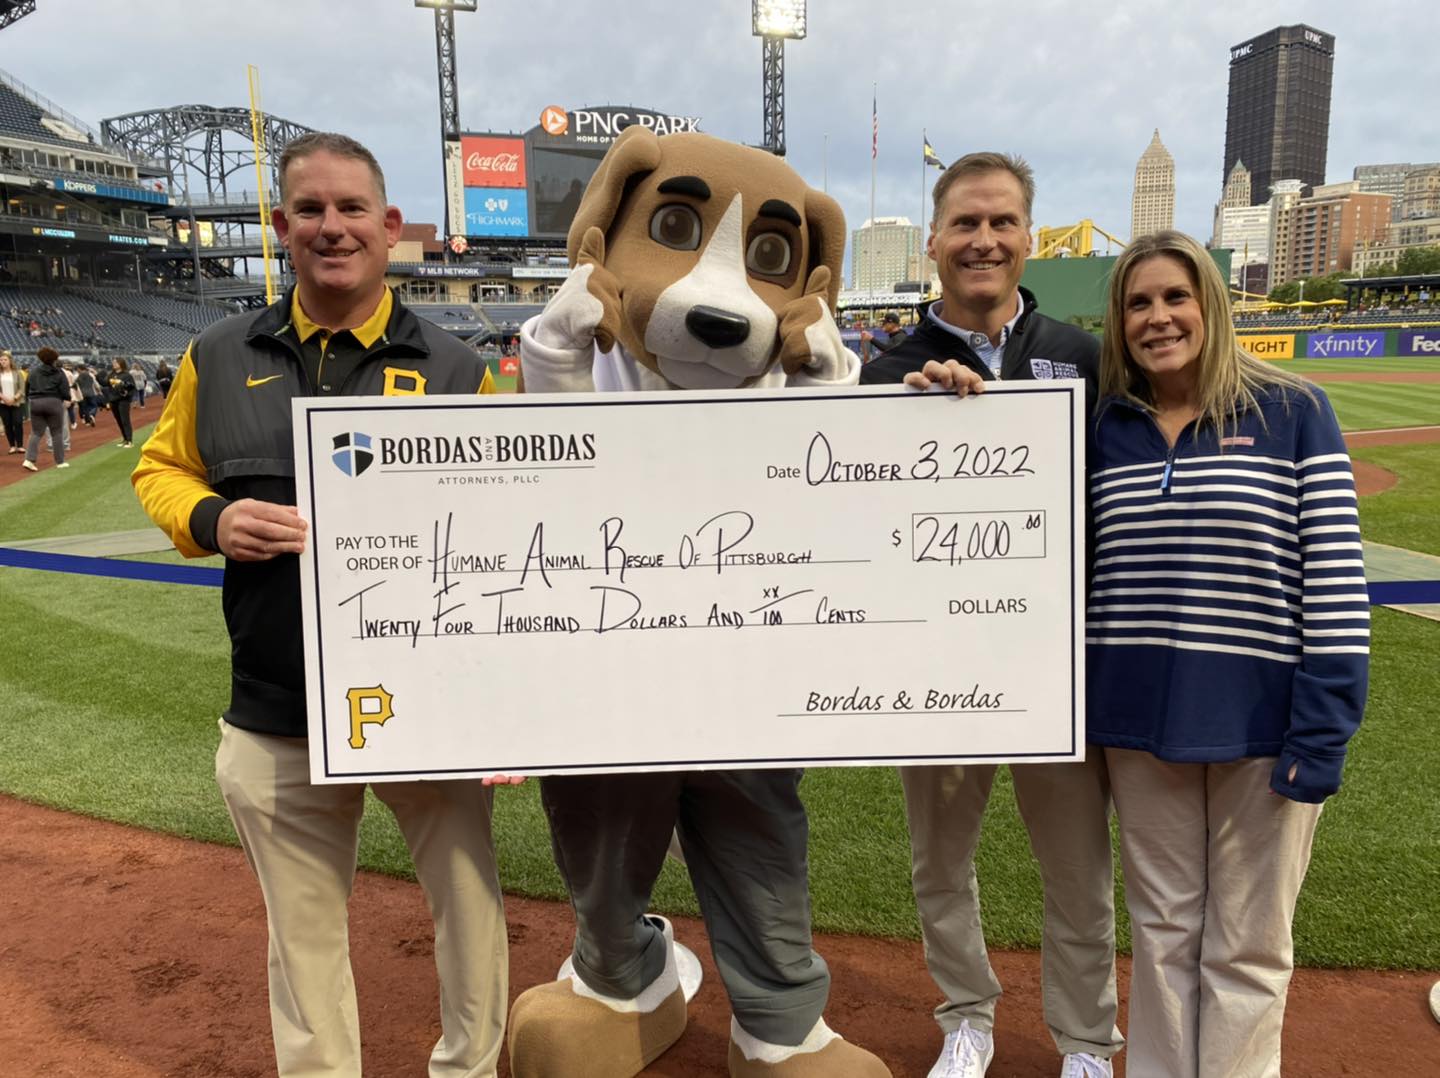 Humane Animal Rescue of Pittsburgh through Pirates Partnership